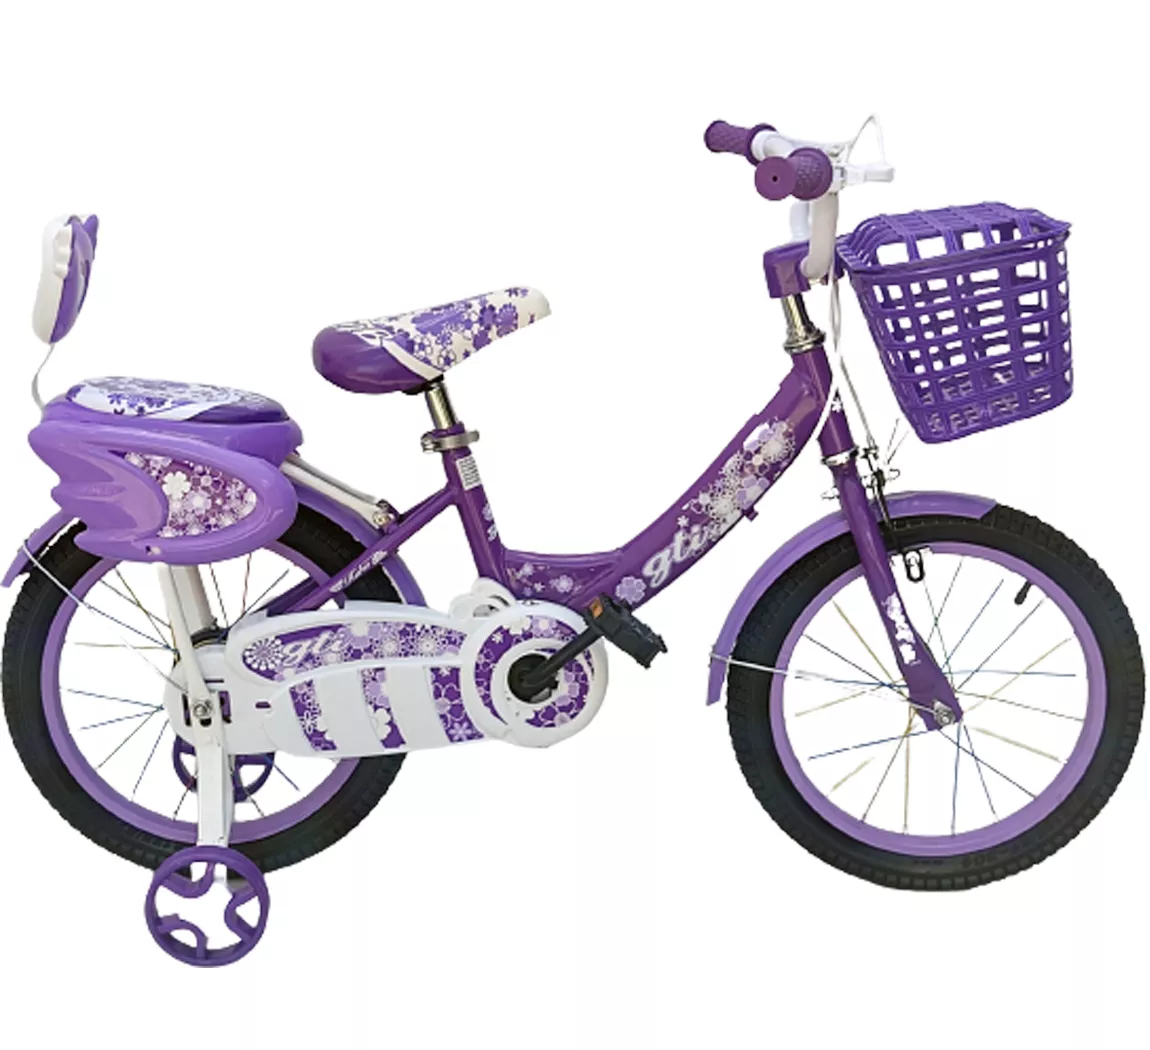 GTI Bicicicleta princess 12 1/2” de niña